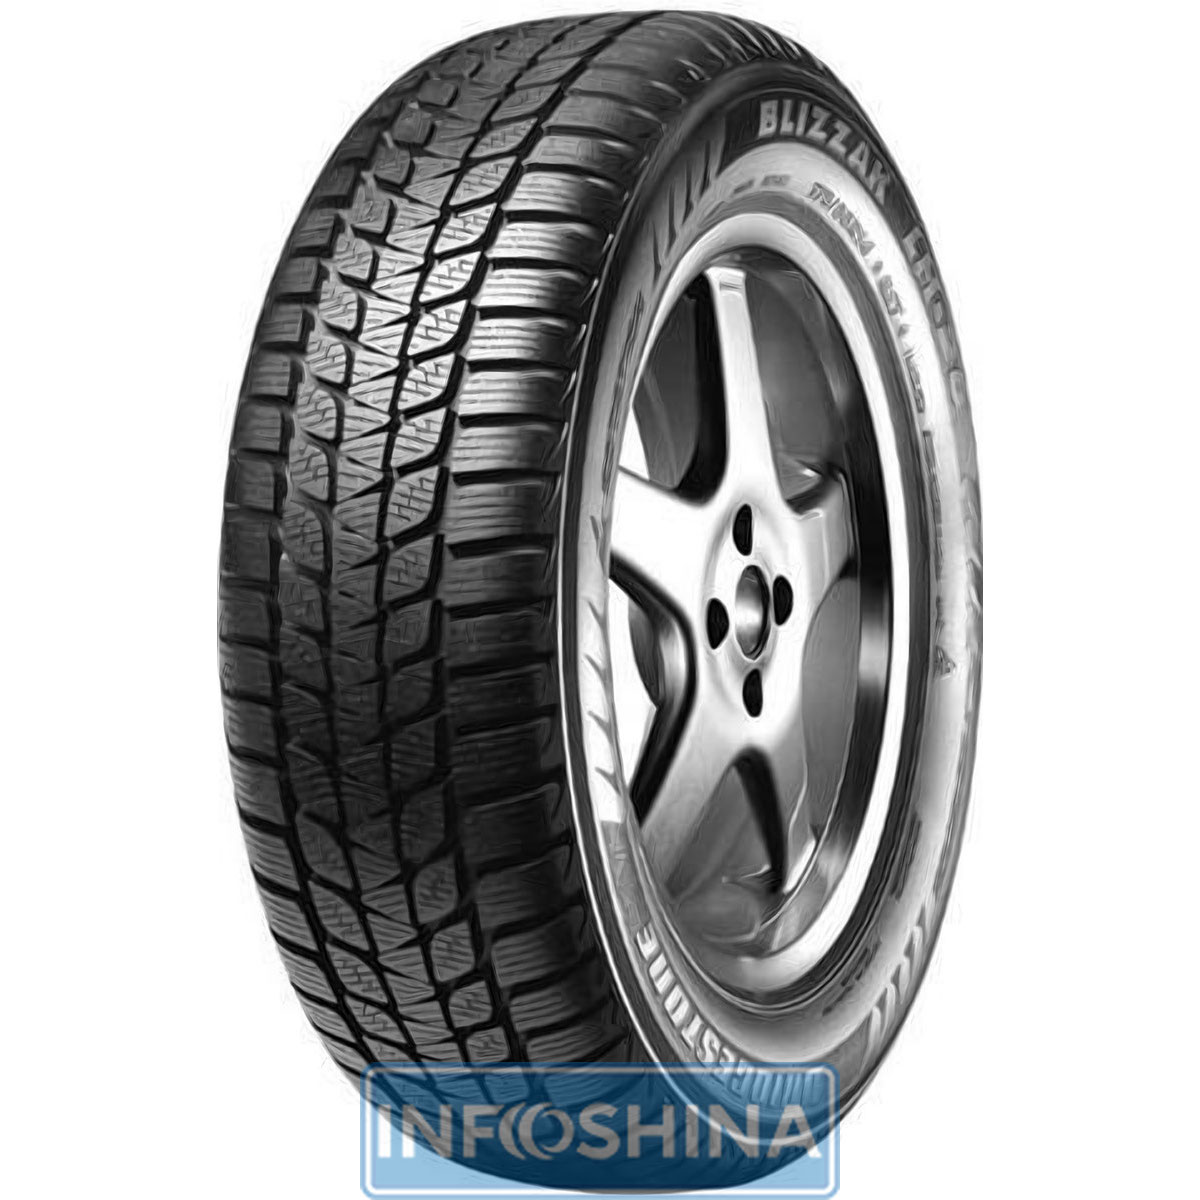 Купить шины Bridgestone Blizzak LM-20 165/70 R13 79T